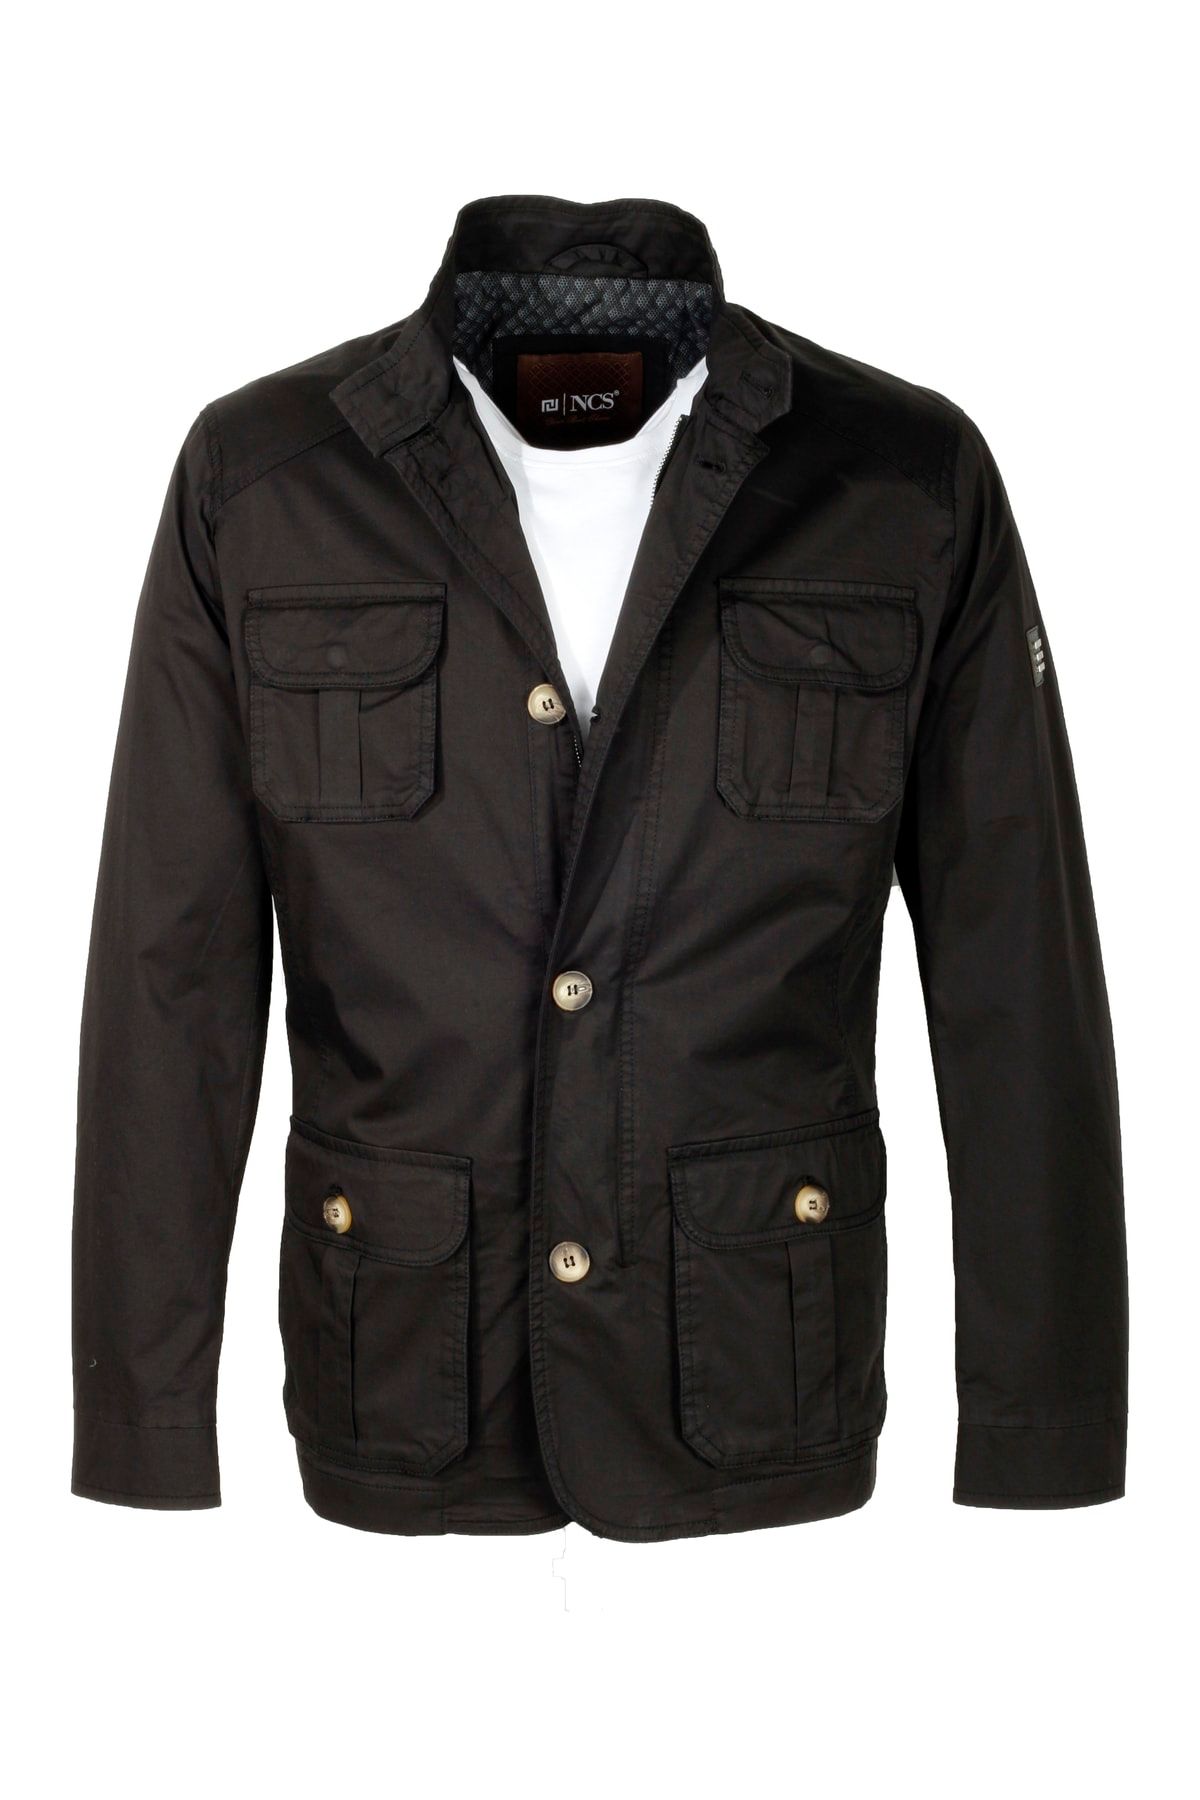 Ncs Erkek Safari Siyah Baharlık Ince Astarlı Slim Fit Düğmeli Ve Fermuarlı Pamuklu Ceket Jeans 4951